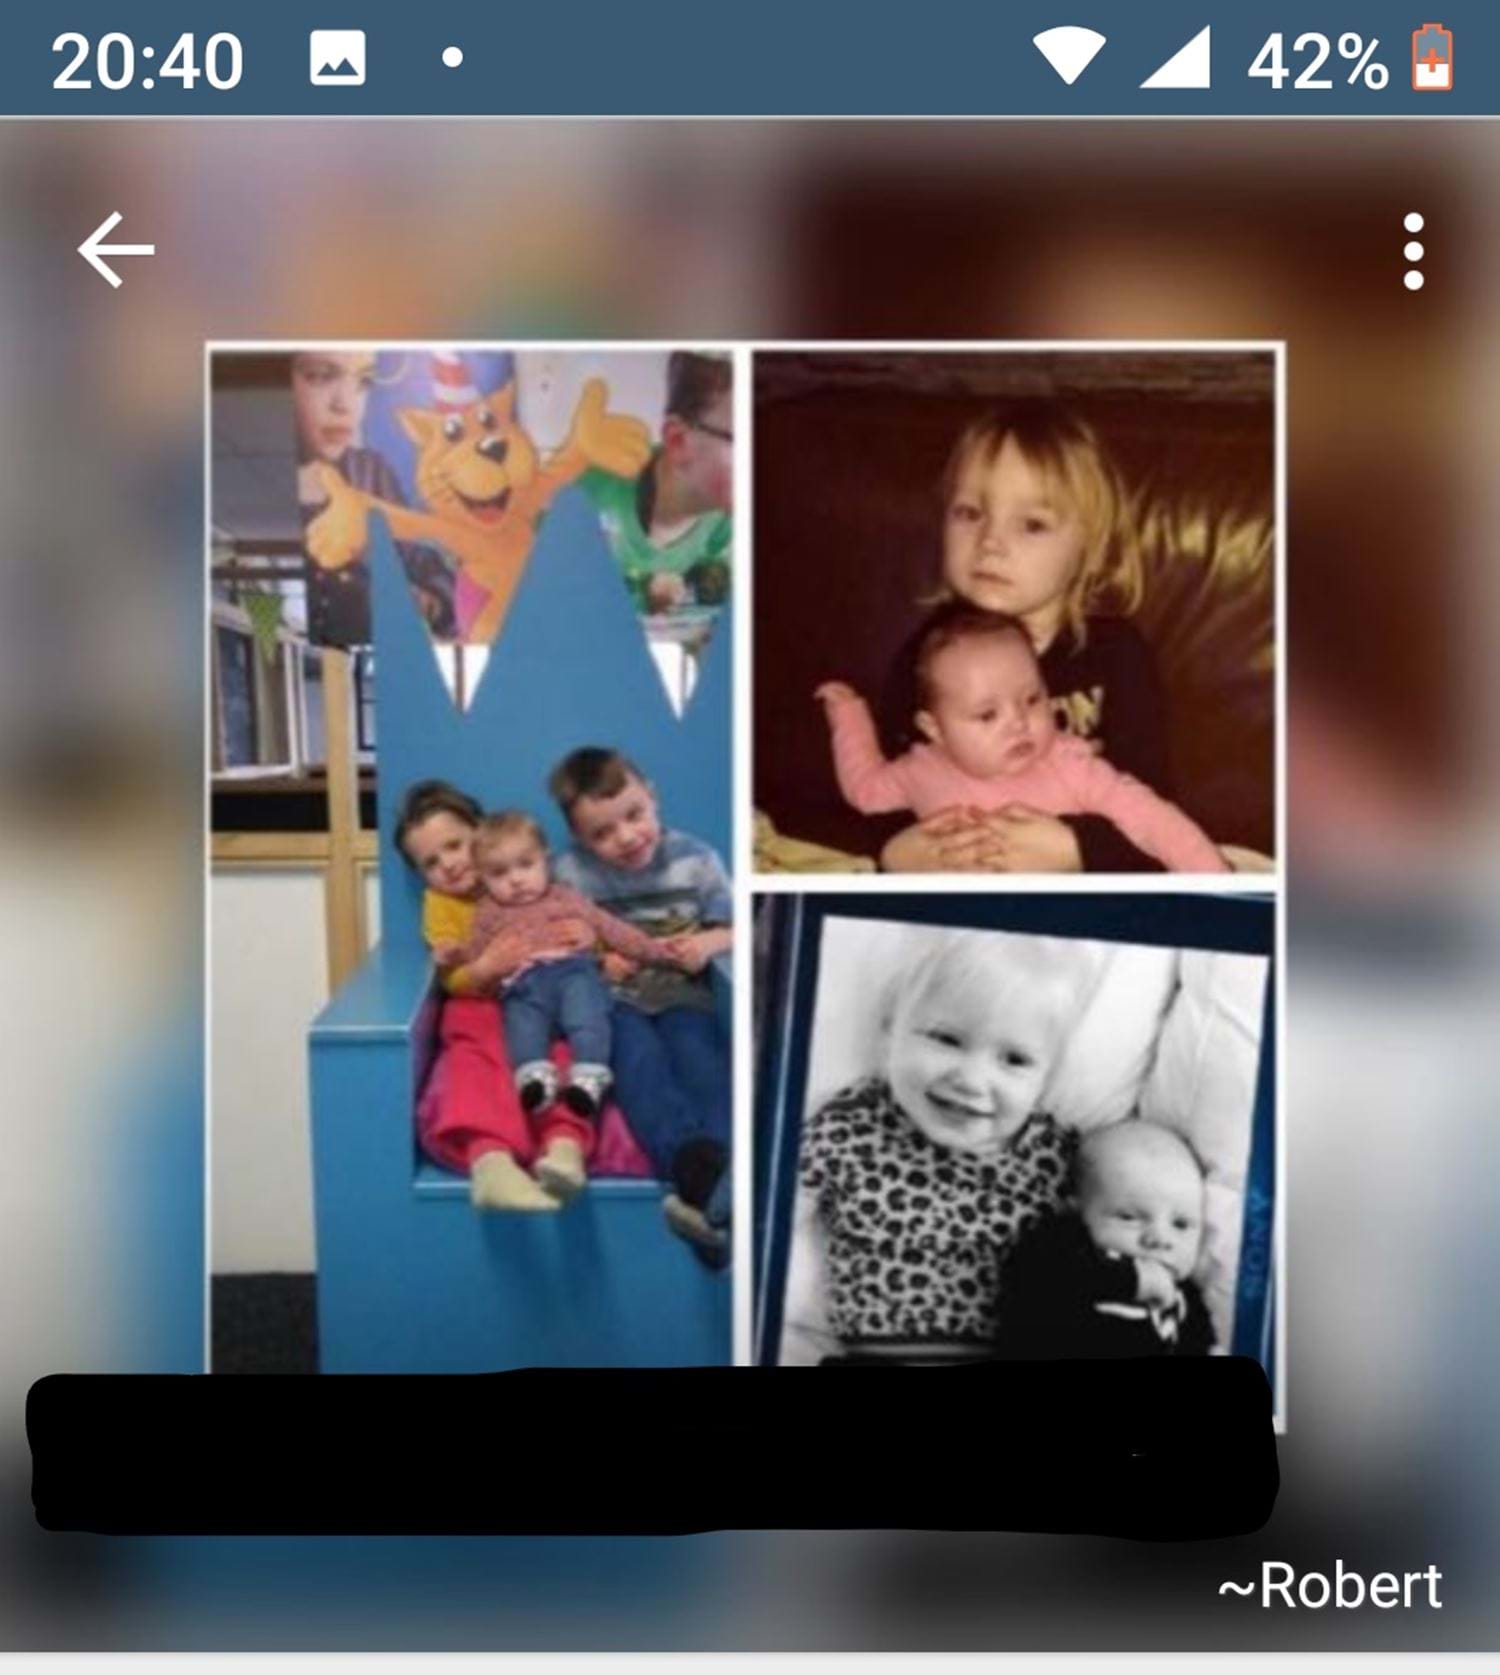 De zogenaamde koper heeft foto's van kinderen op zijn profiel op whatsapp.